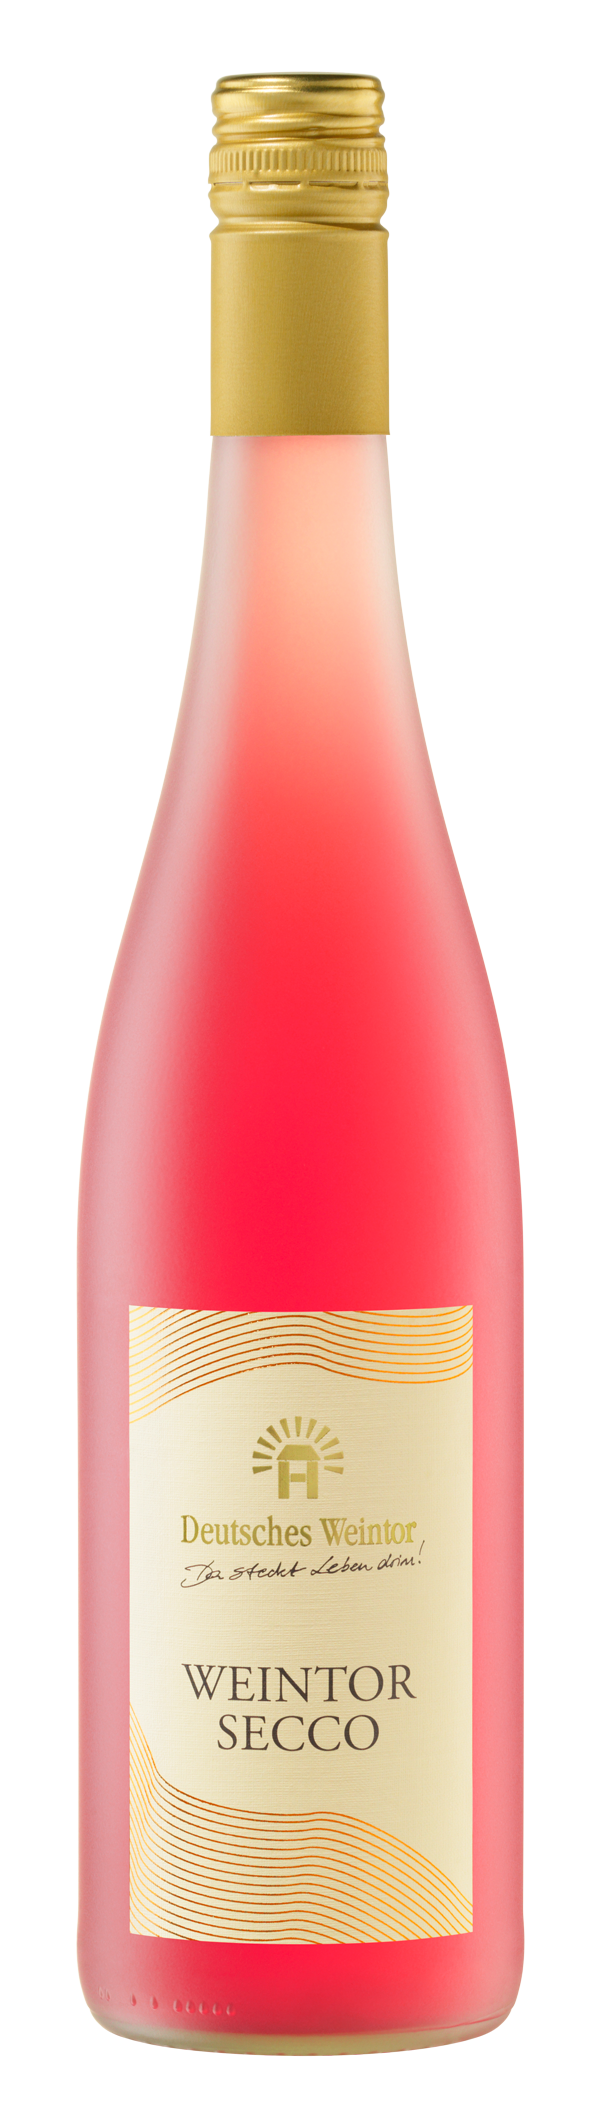 WEINTOR SECCO Rosé 0,75 L - Deutsches Weintor